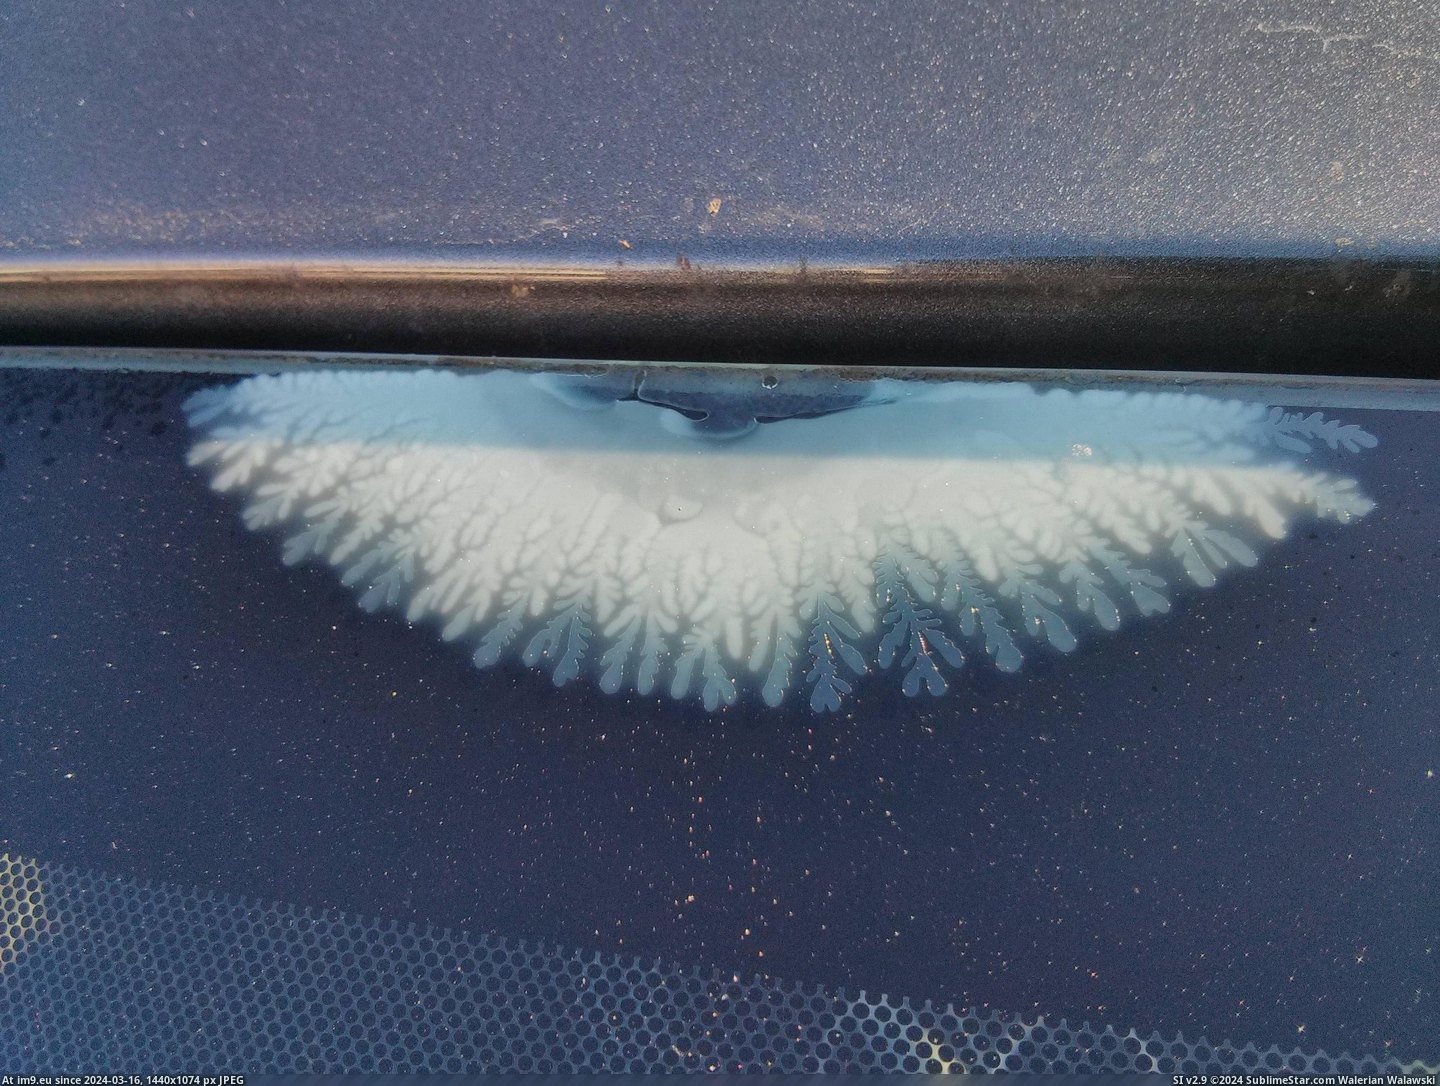 #Pattern #Delaminating #Windshield [Mildlyinteresting] This windshield is delaminating in a pattern. Pic. (Obraz z album My r/MILDLYINTERESTING favs))